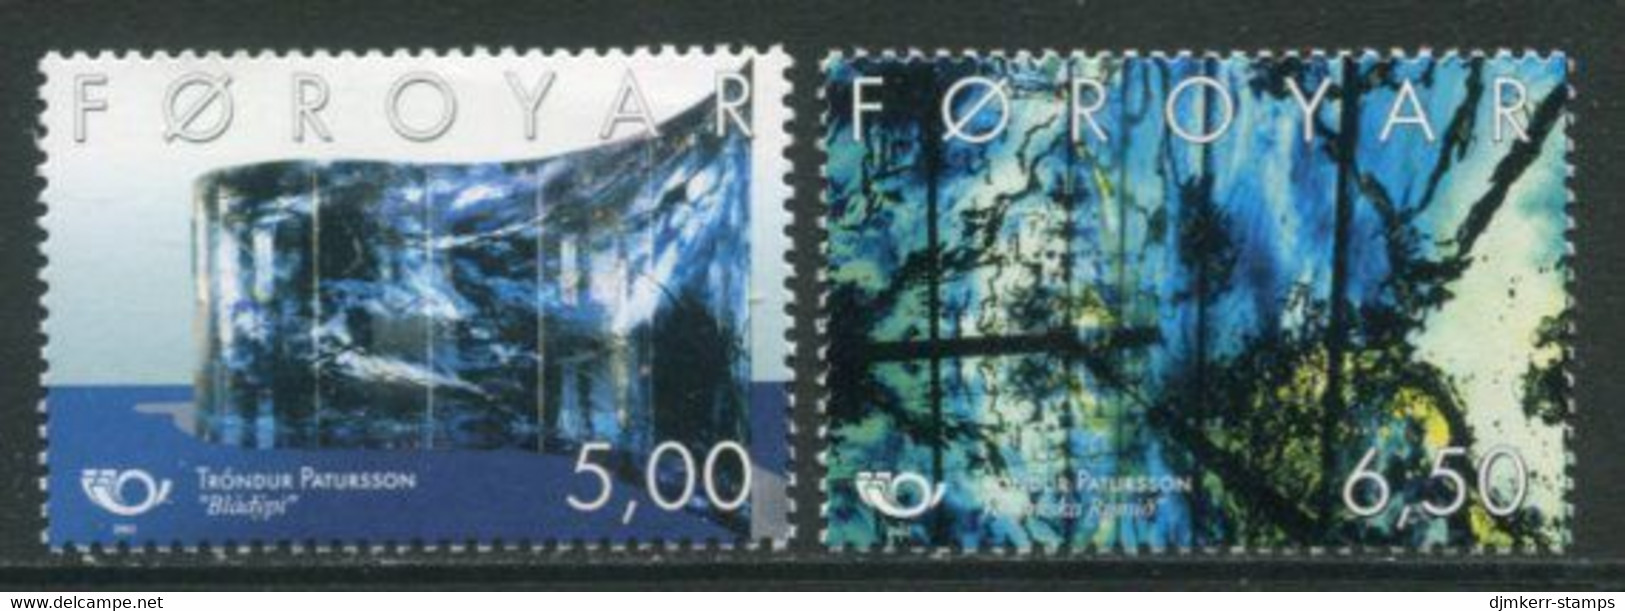 FAEROE ISLANDS 2002 20th Century Art  MNH / **. Michel 421-22 - Faroe Islands